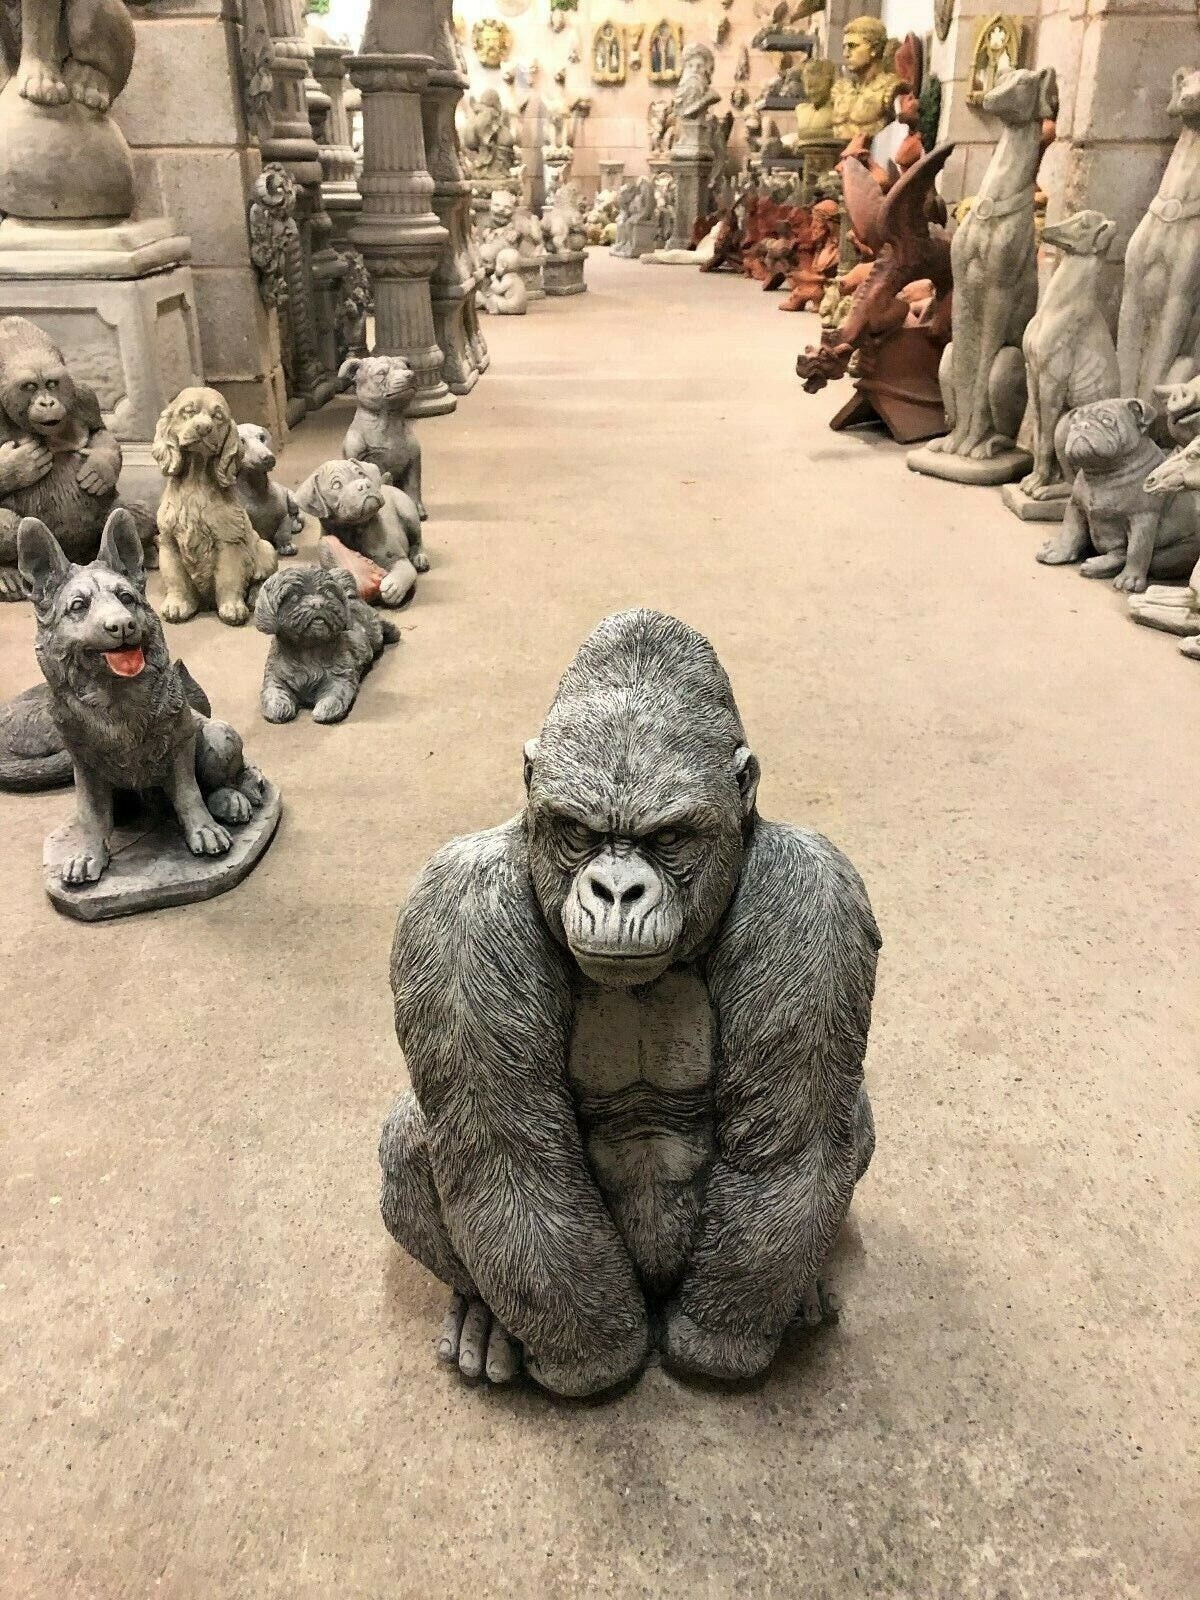 Customized Realistic Gorilla Statue for Sale